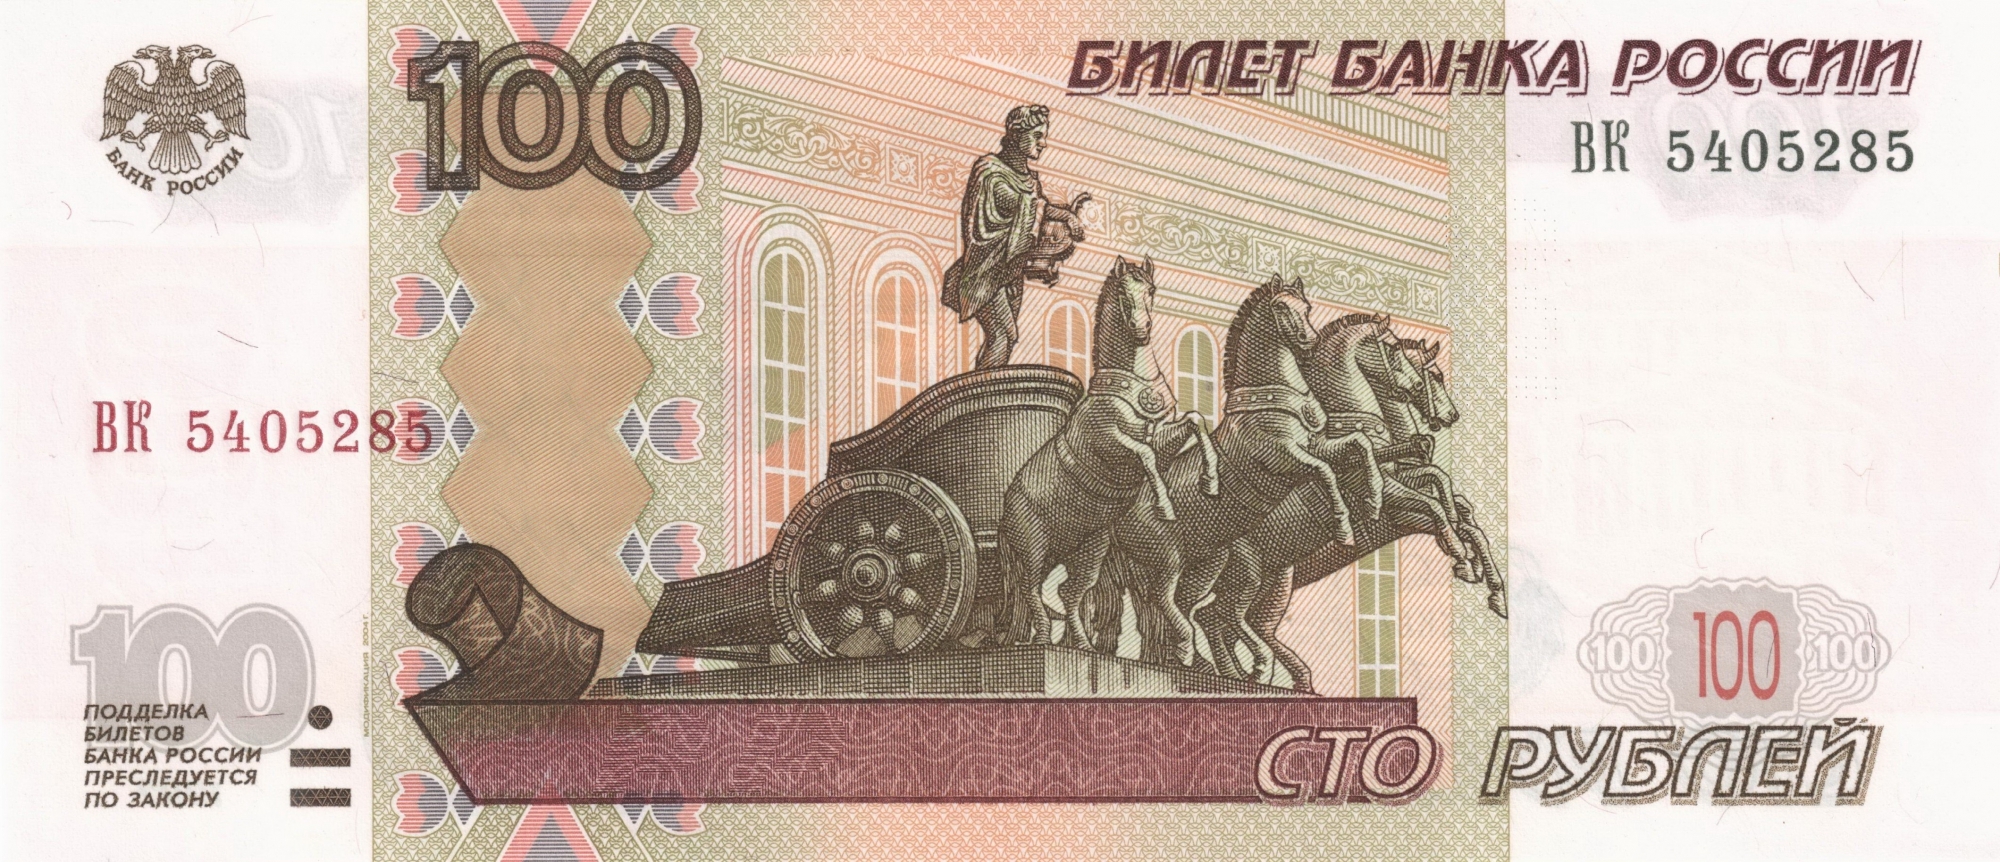 В регионах России евро продают по сто рублей